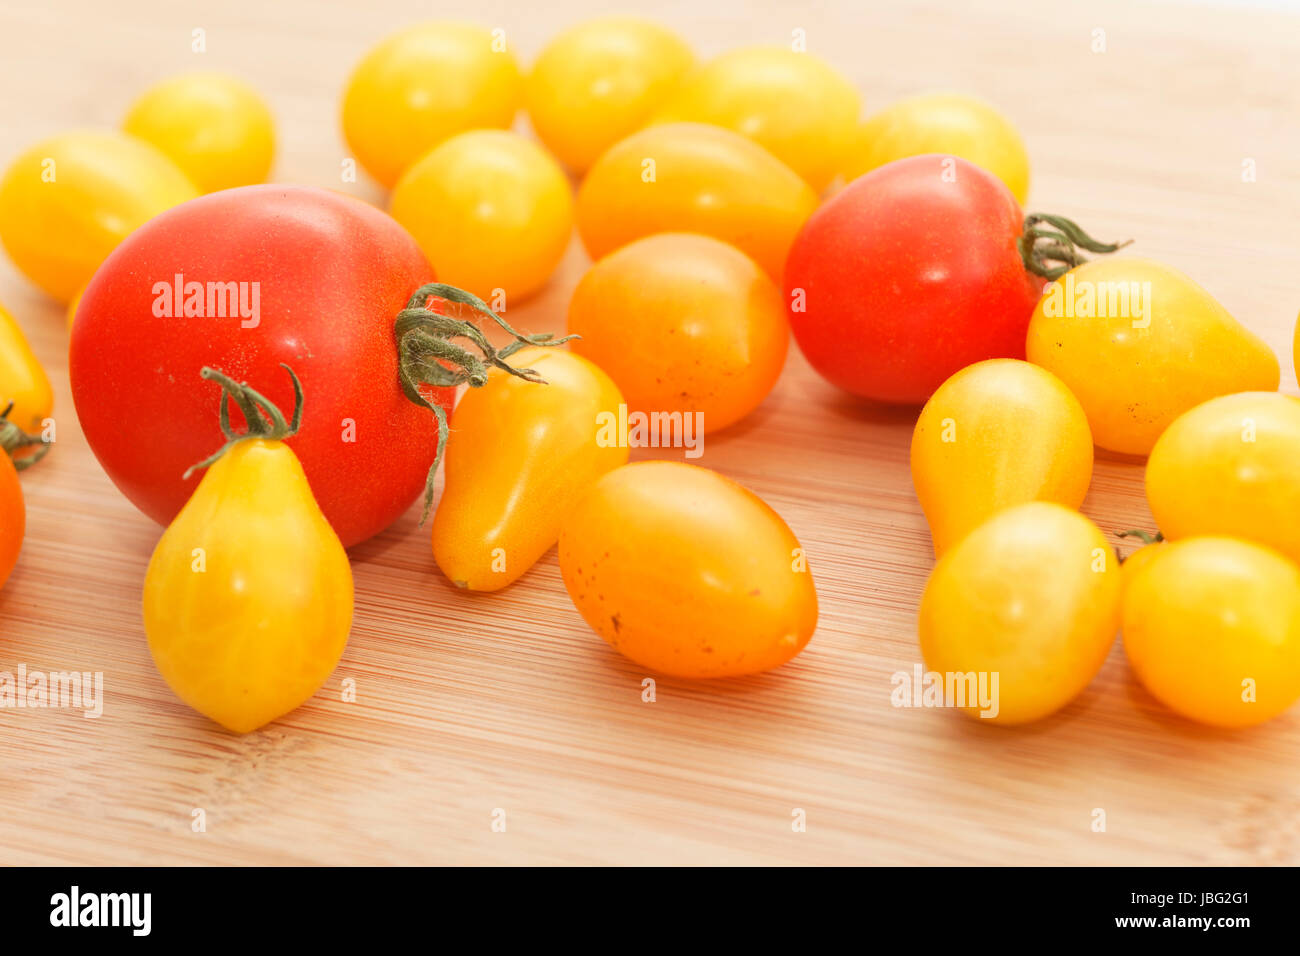 many tomatoes on wood Stock Photo